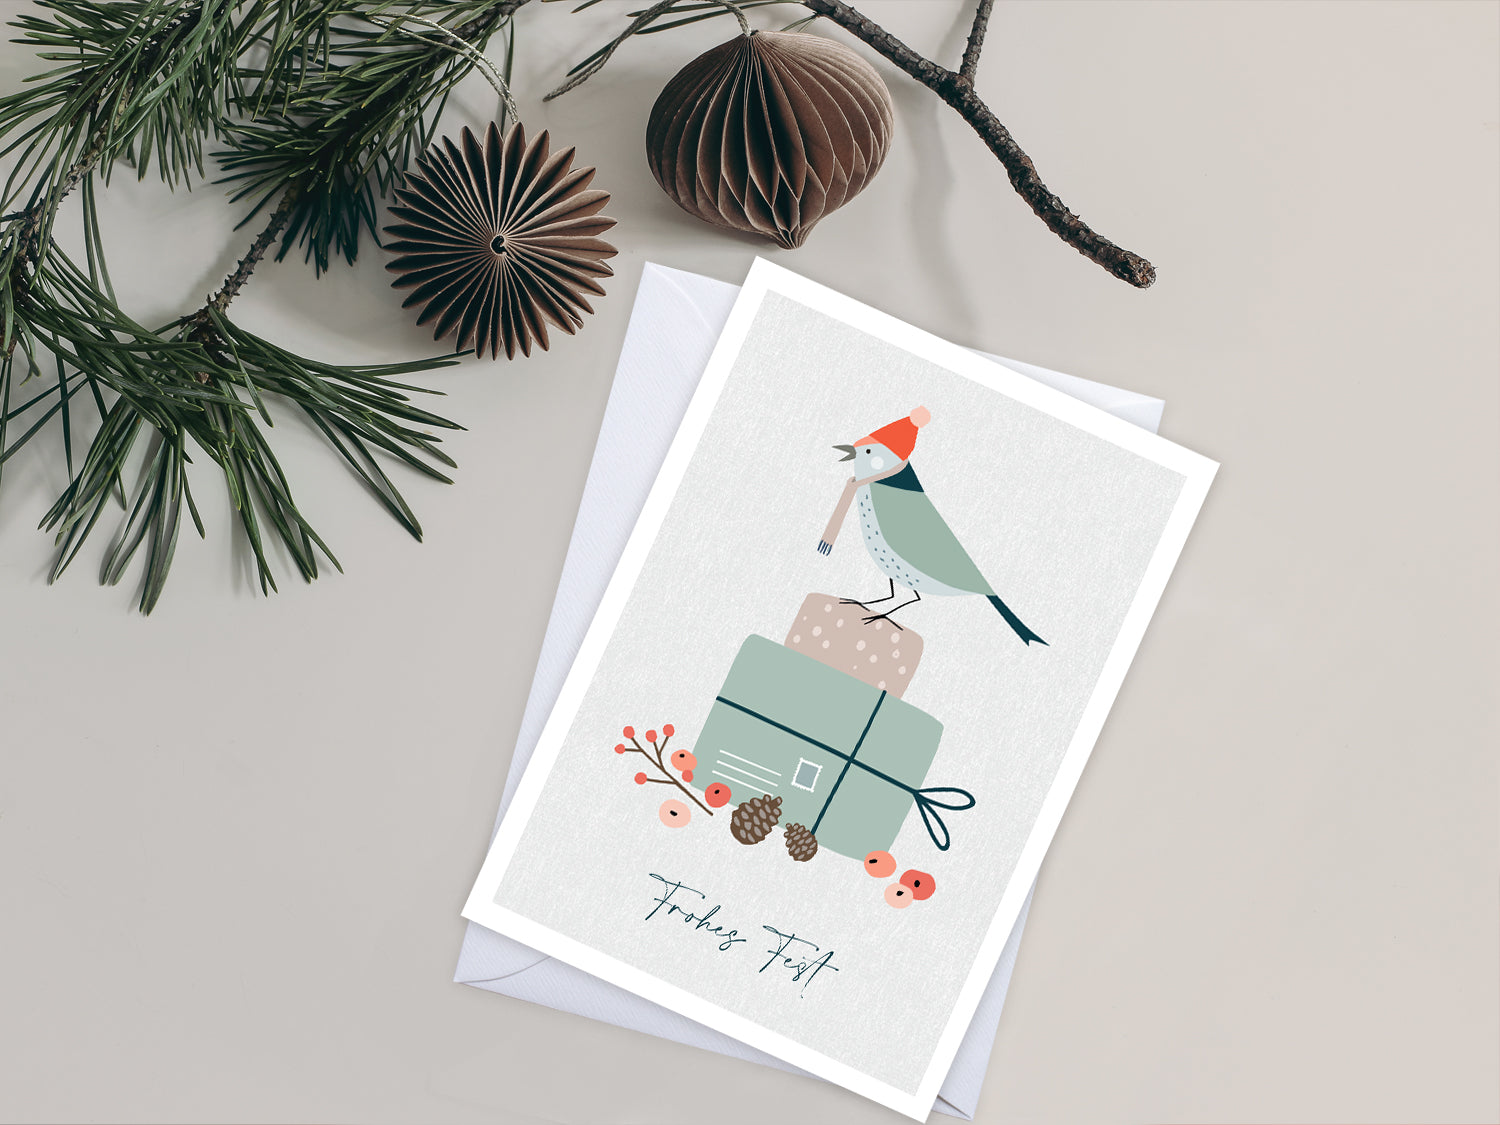 Weihnachtskarte im Scandi Nordic Stil als kleiner Postkartengruß, illustriert mit einem Vogel auf einem Geschenk und dem Wunsch nach einem "Frohen Fest".  Postkarte: DIN A6 Druck: 4/1-farbig, Offsetdruck   Karton: Offsetkarton, 400g/qm (natürliche Haptik)   Briefumschlag: weiß, nassklebend